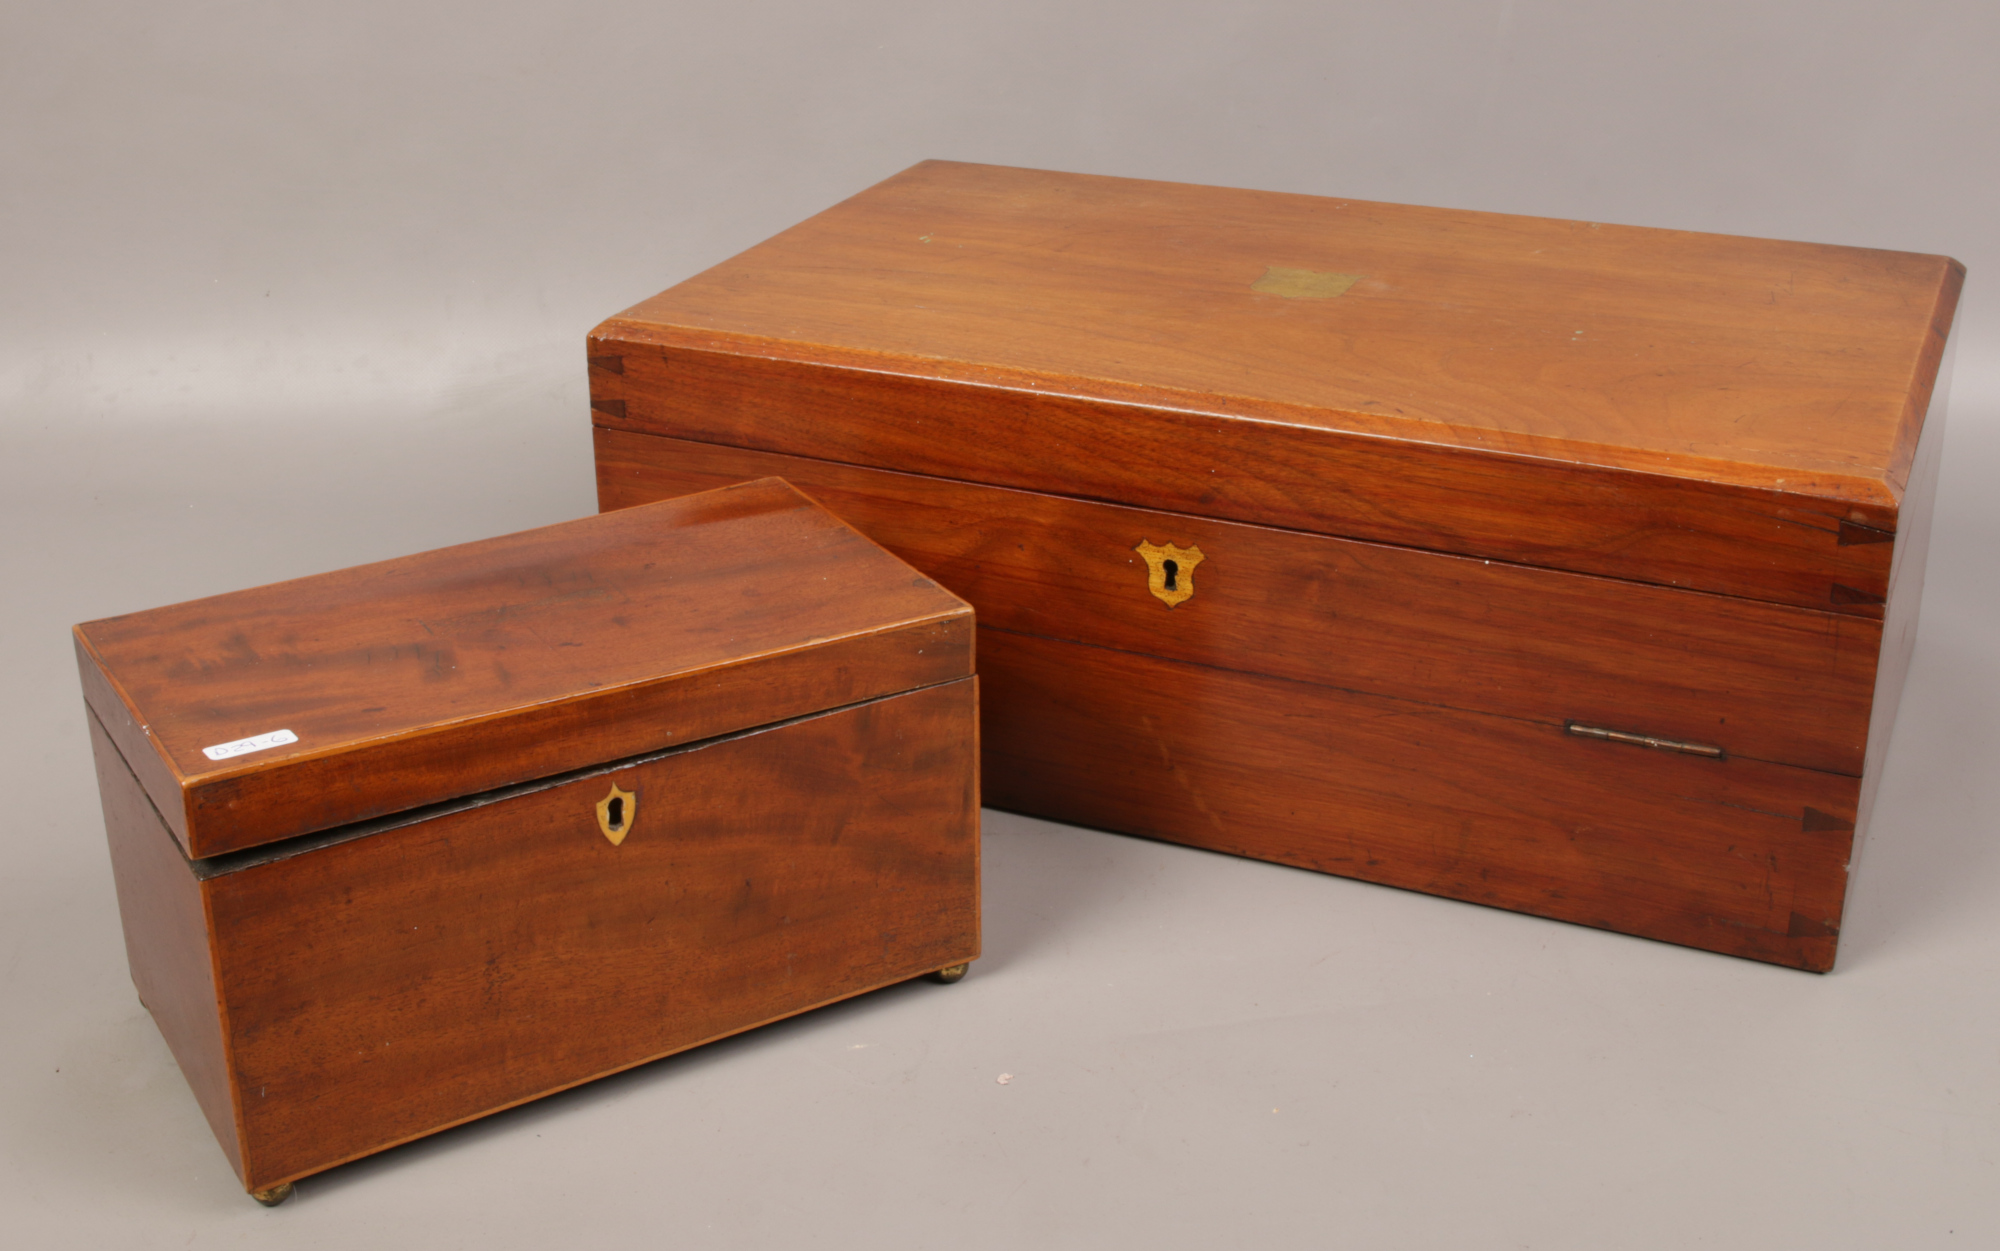 A mahogany cutlery box, along with a Victorian mahogany tea caddy.